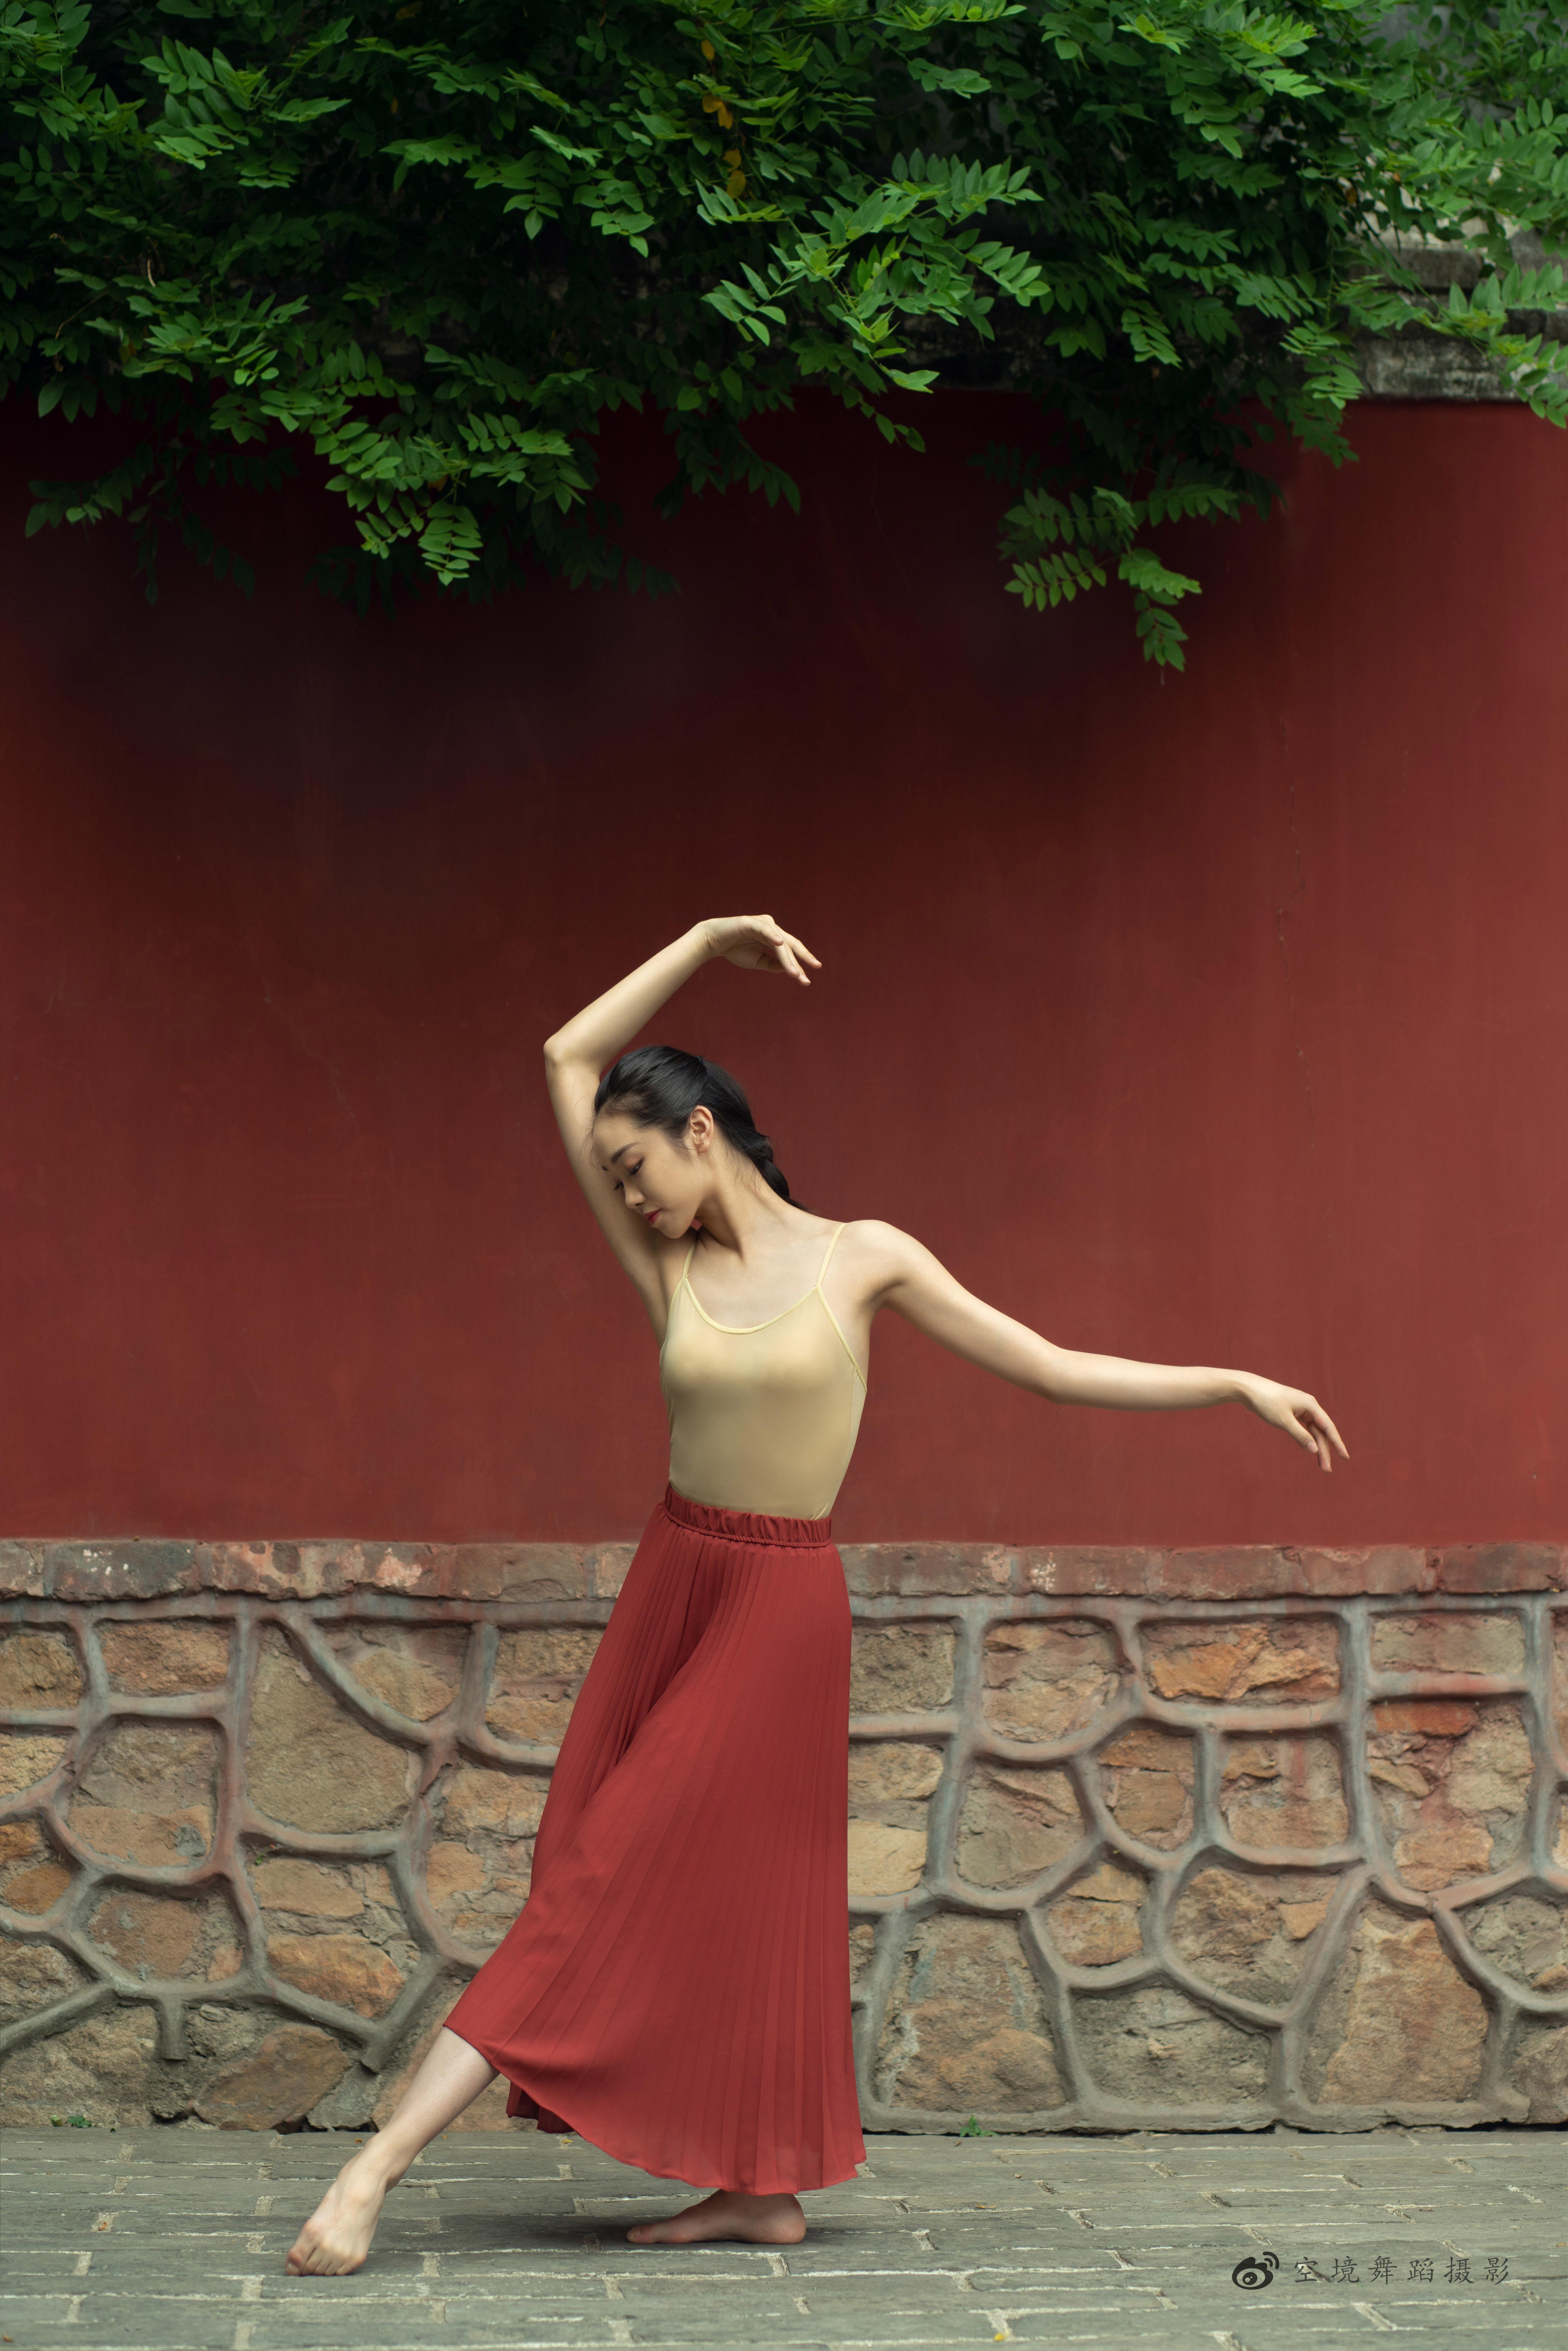 舞蹈美到什么程度很难讲这组作品拍摄于紫竹院公园听说彭芷琪同学是